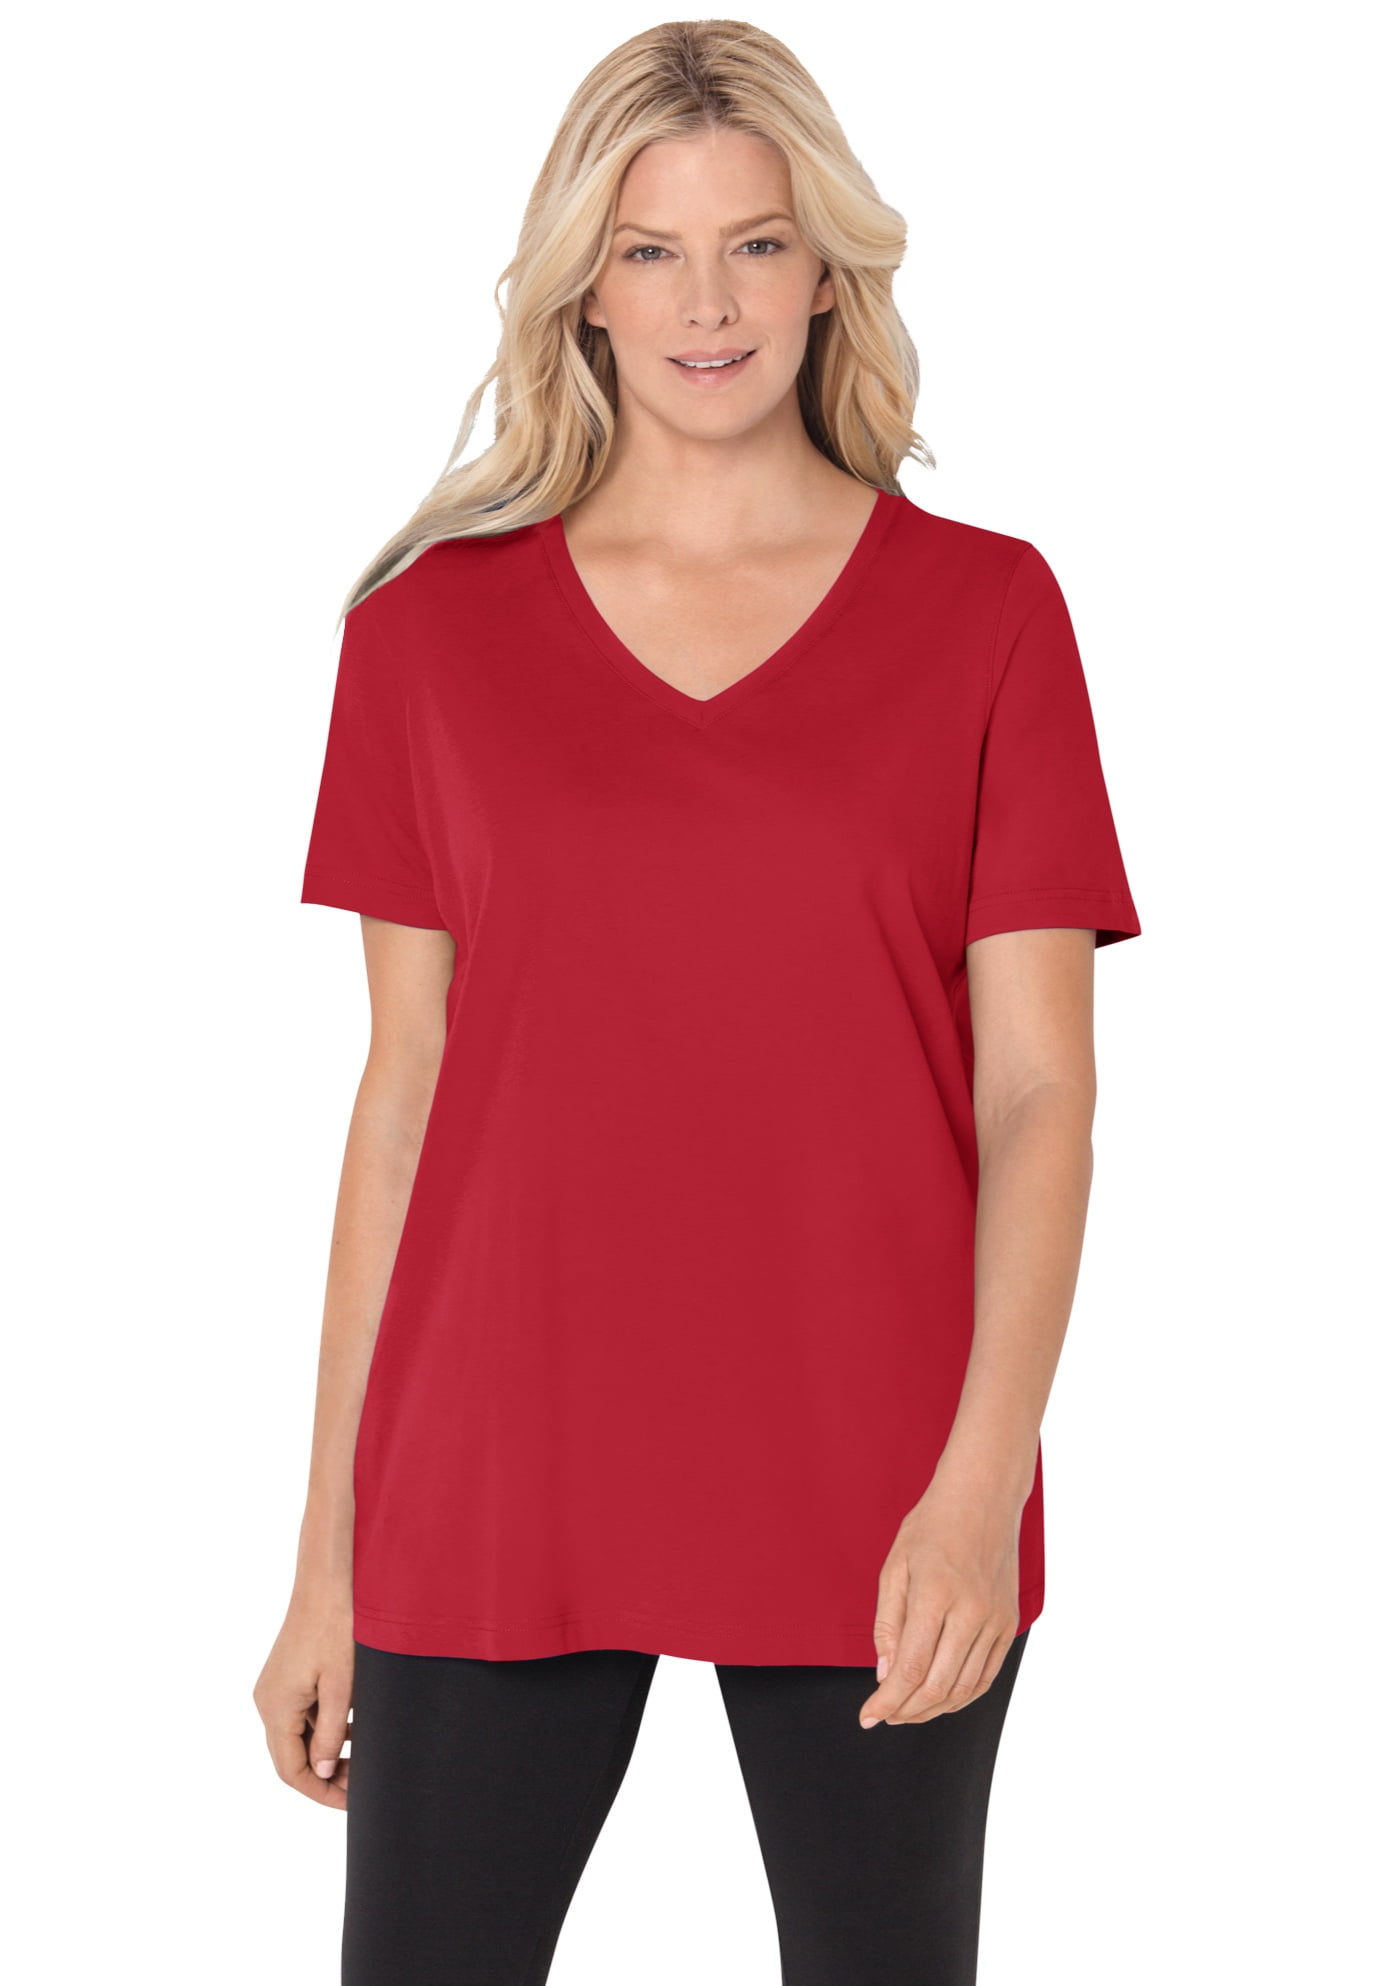 red womens tshirt